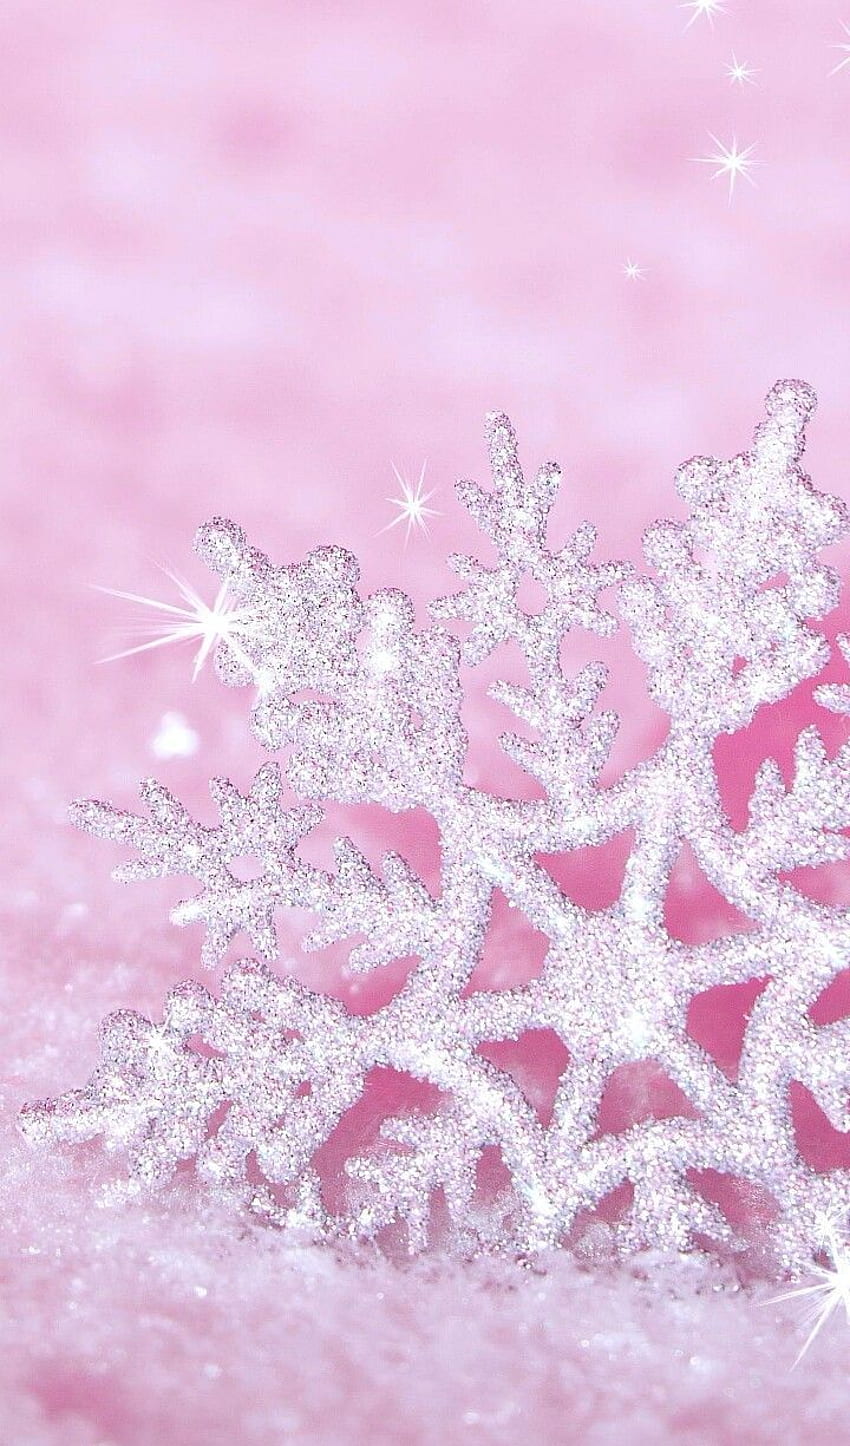 Nền tuyết tinh hình bông tuyết màu hồng là một tác phẩm nghệ thuật tuyệt đẹp và cực kỳ nổi bật. Với sự kết hợp giữa hình ảnh bông tuyết cùng màu hồng nhẹ nhàng, chắc chắn sẽ làm bạn say đắm. Hãy dành chút thời gian để thưởng thức và cảm nhận sự tinh tế của nó.